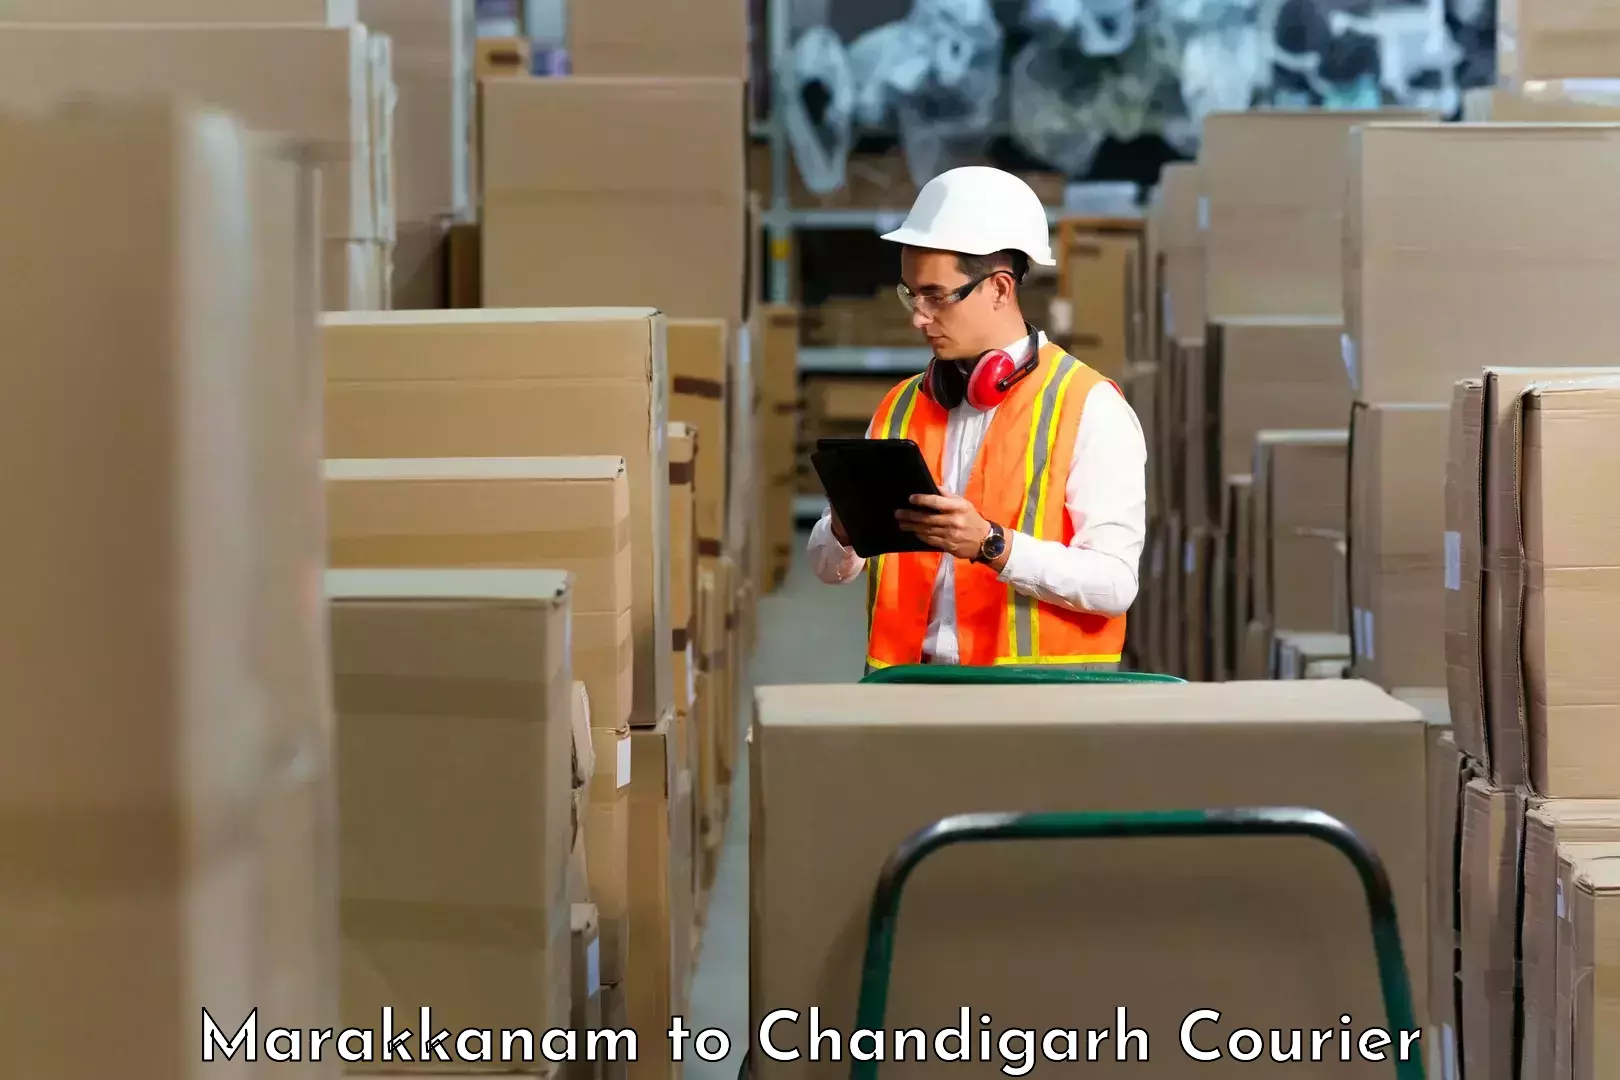 Custom courier packaging Marakkanam to Chandigarh